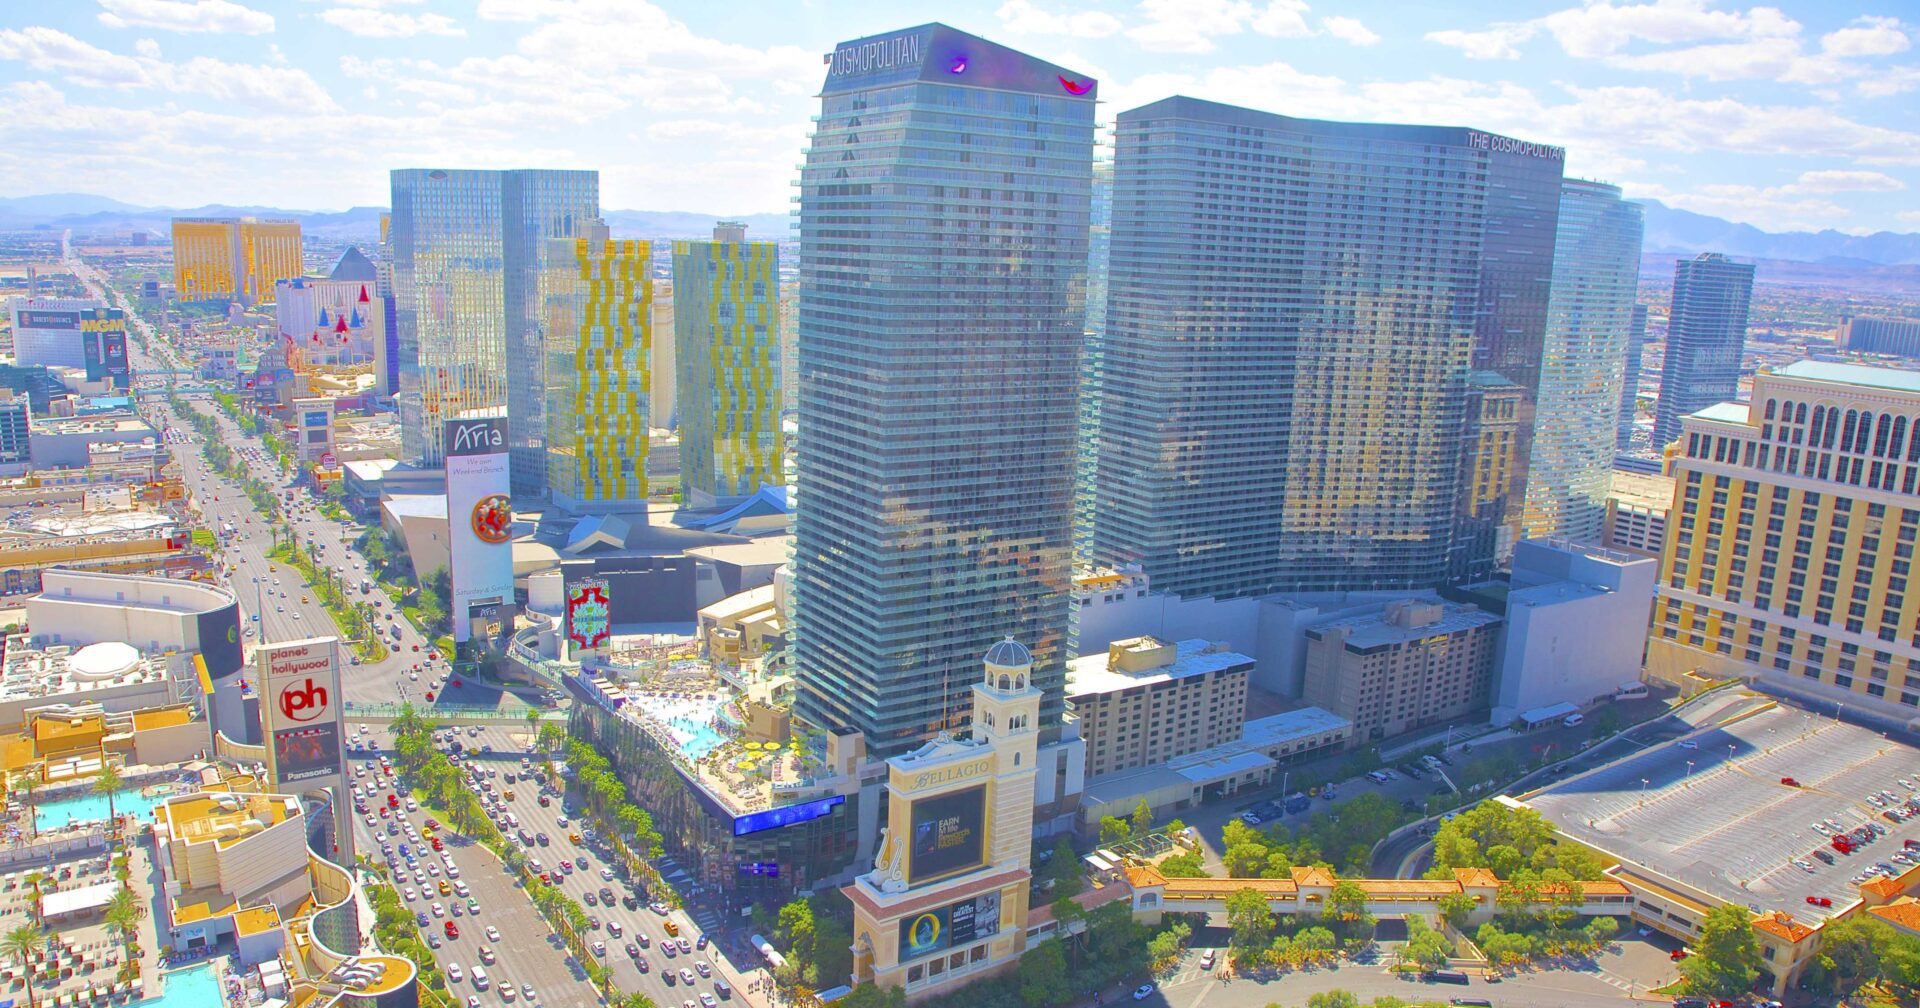 Las Vegas Strip - Cosmopolitan in great weather